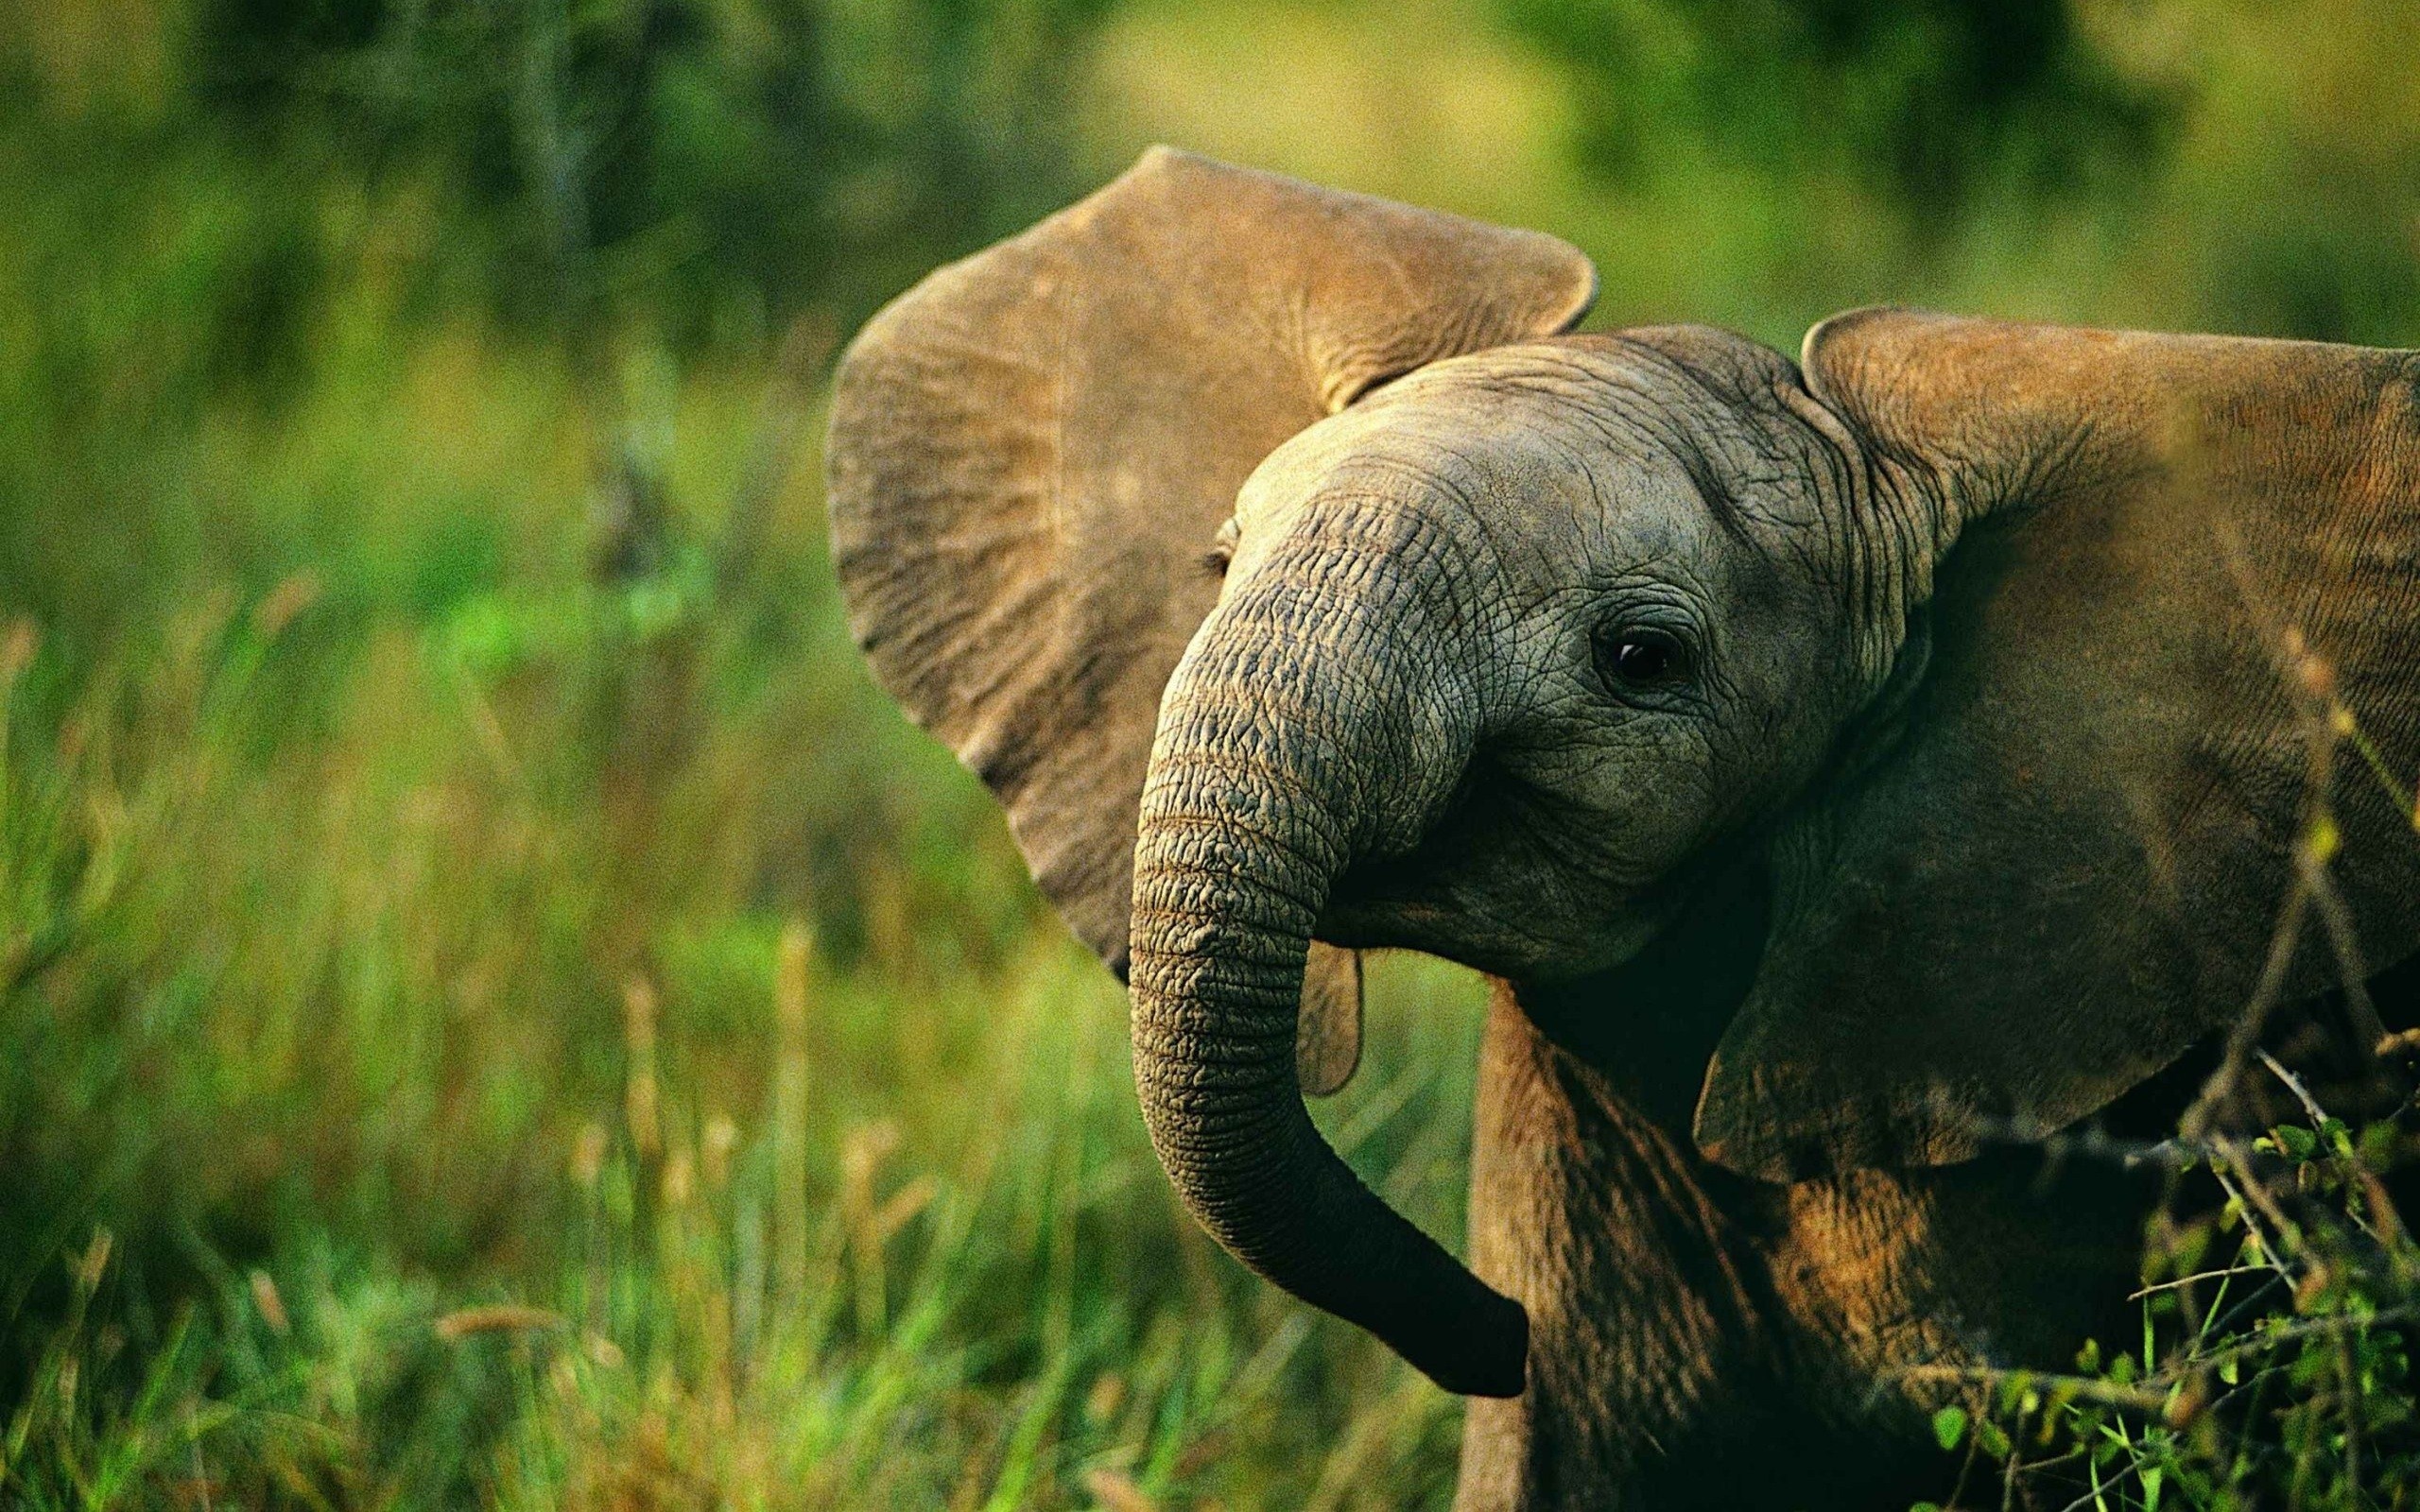 Baby elefant